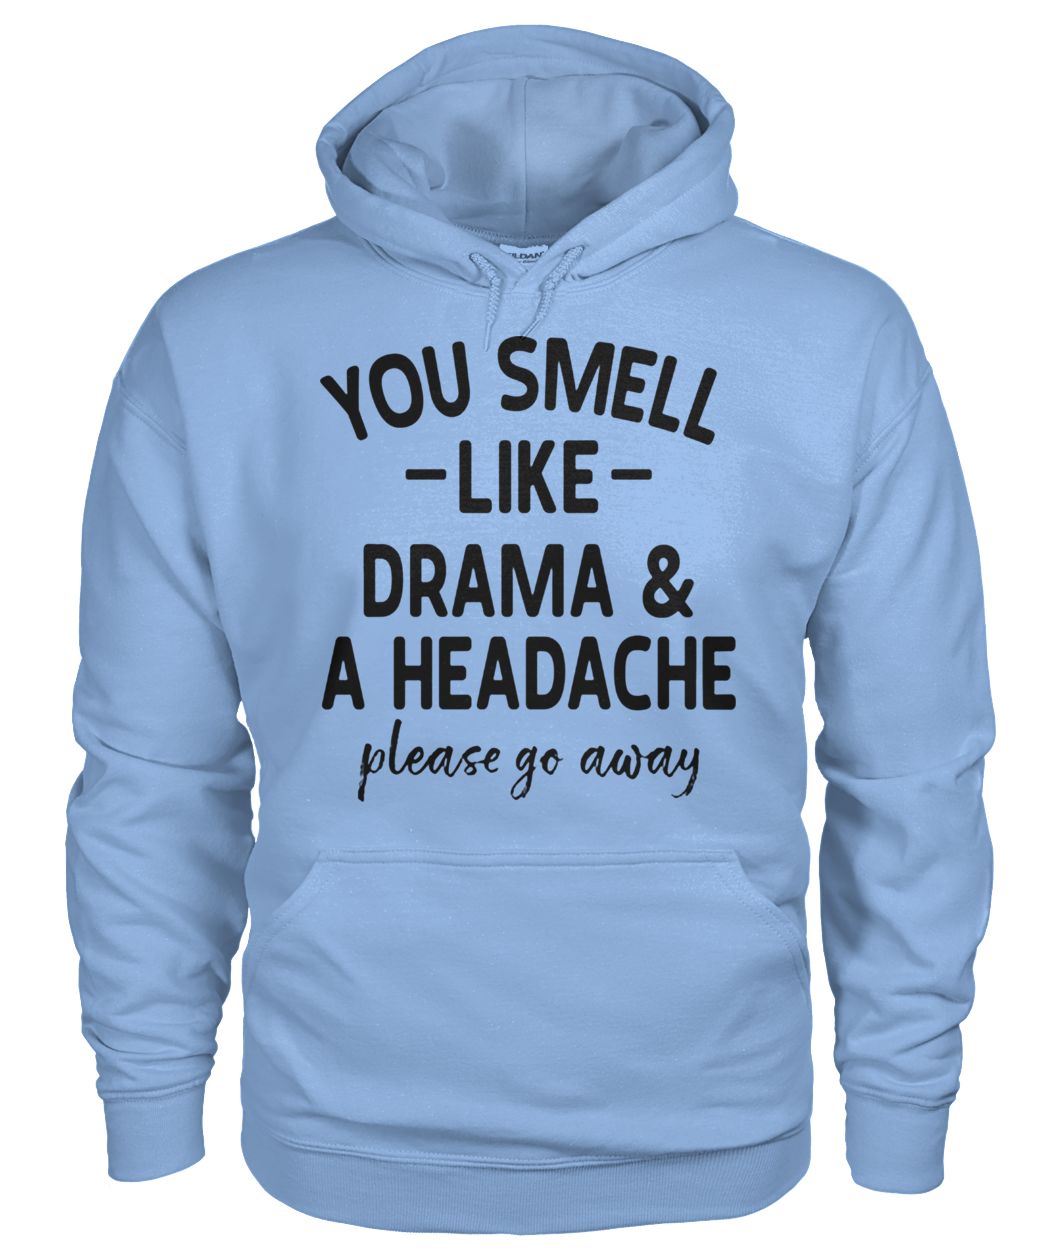 You smell like drama and a headache please go away gildan hoodie